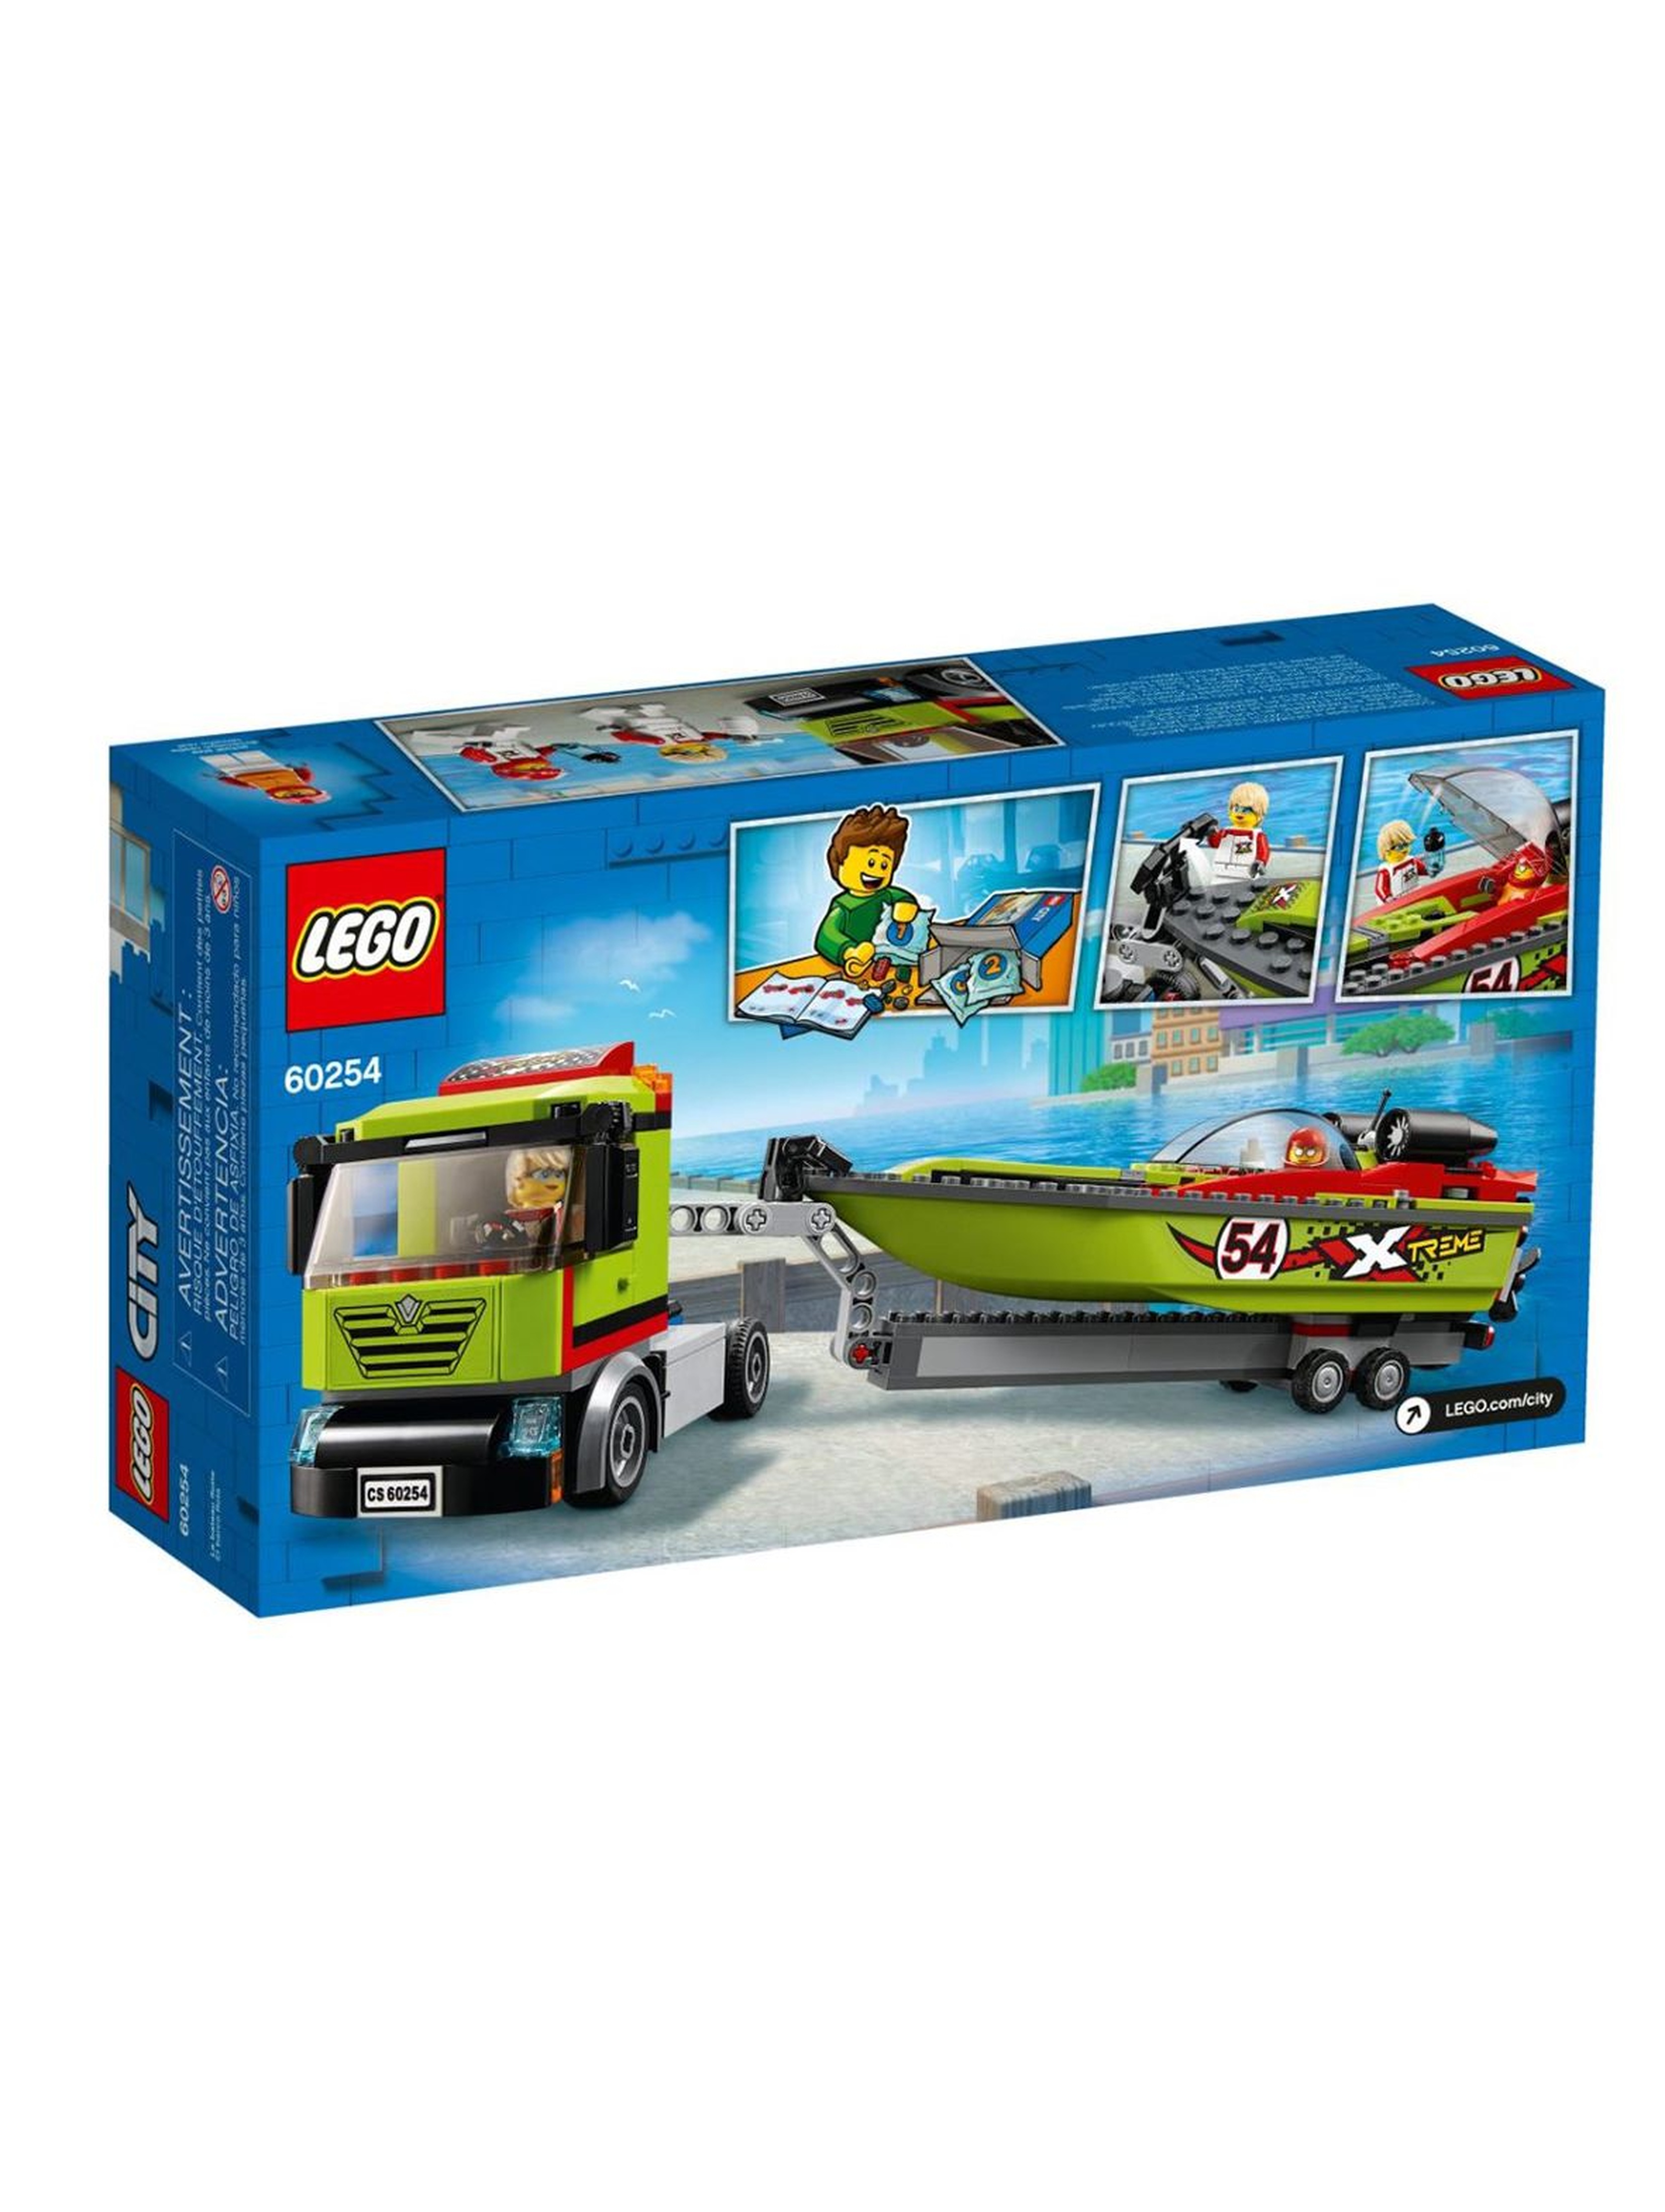 Lego City - Transporter łodzi wyścigowej - 238 el wiek 5+